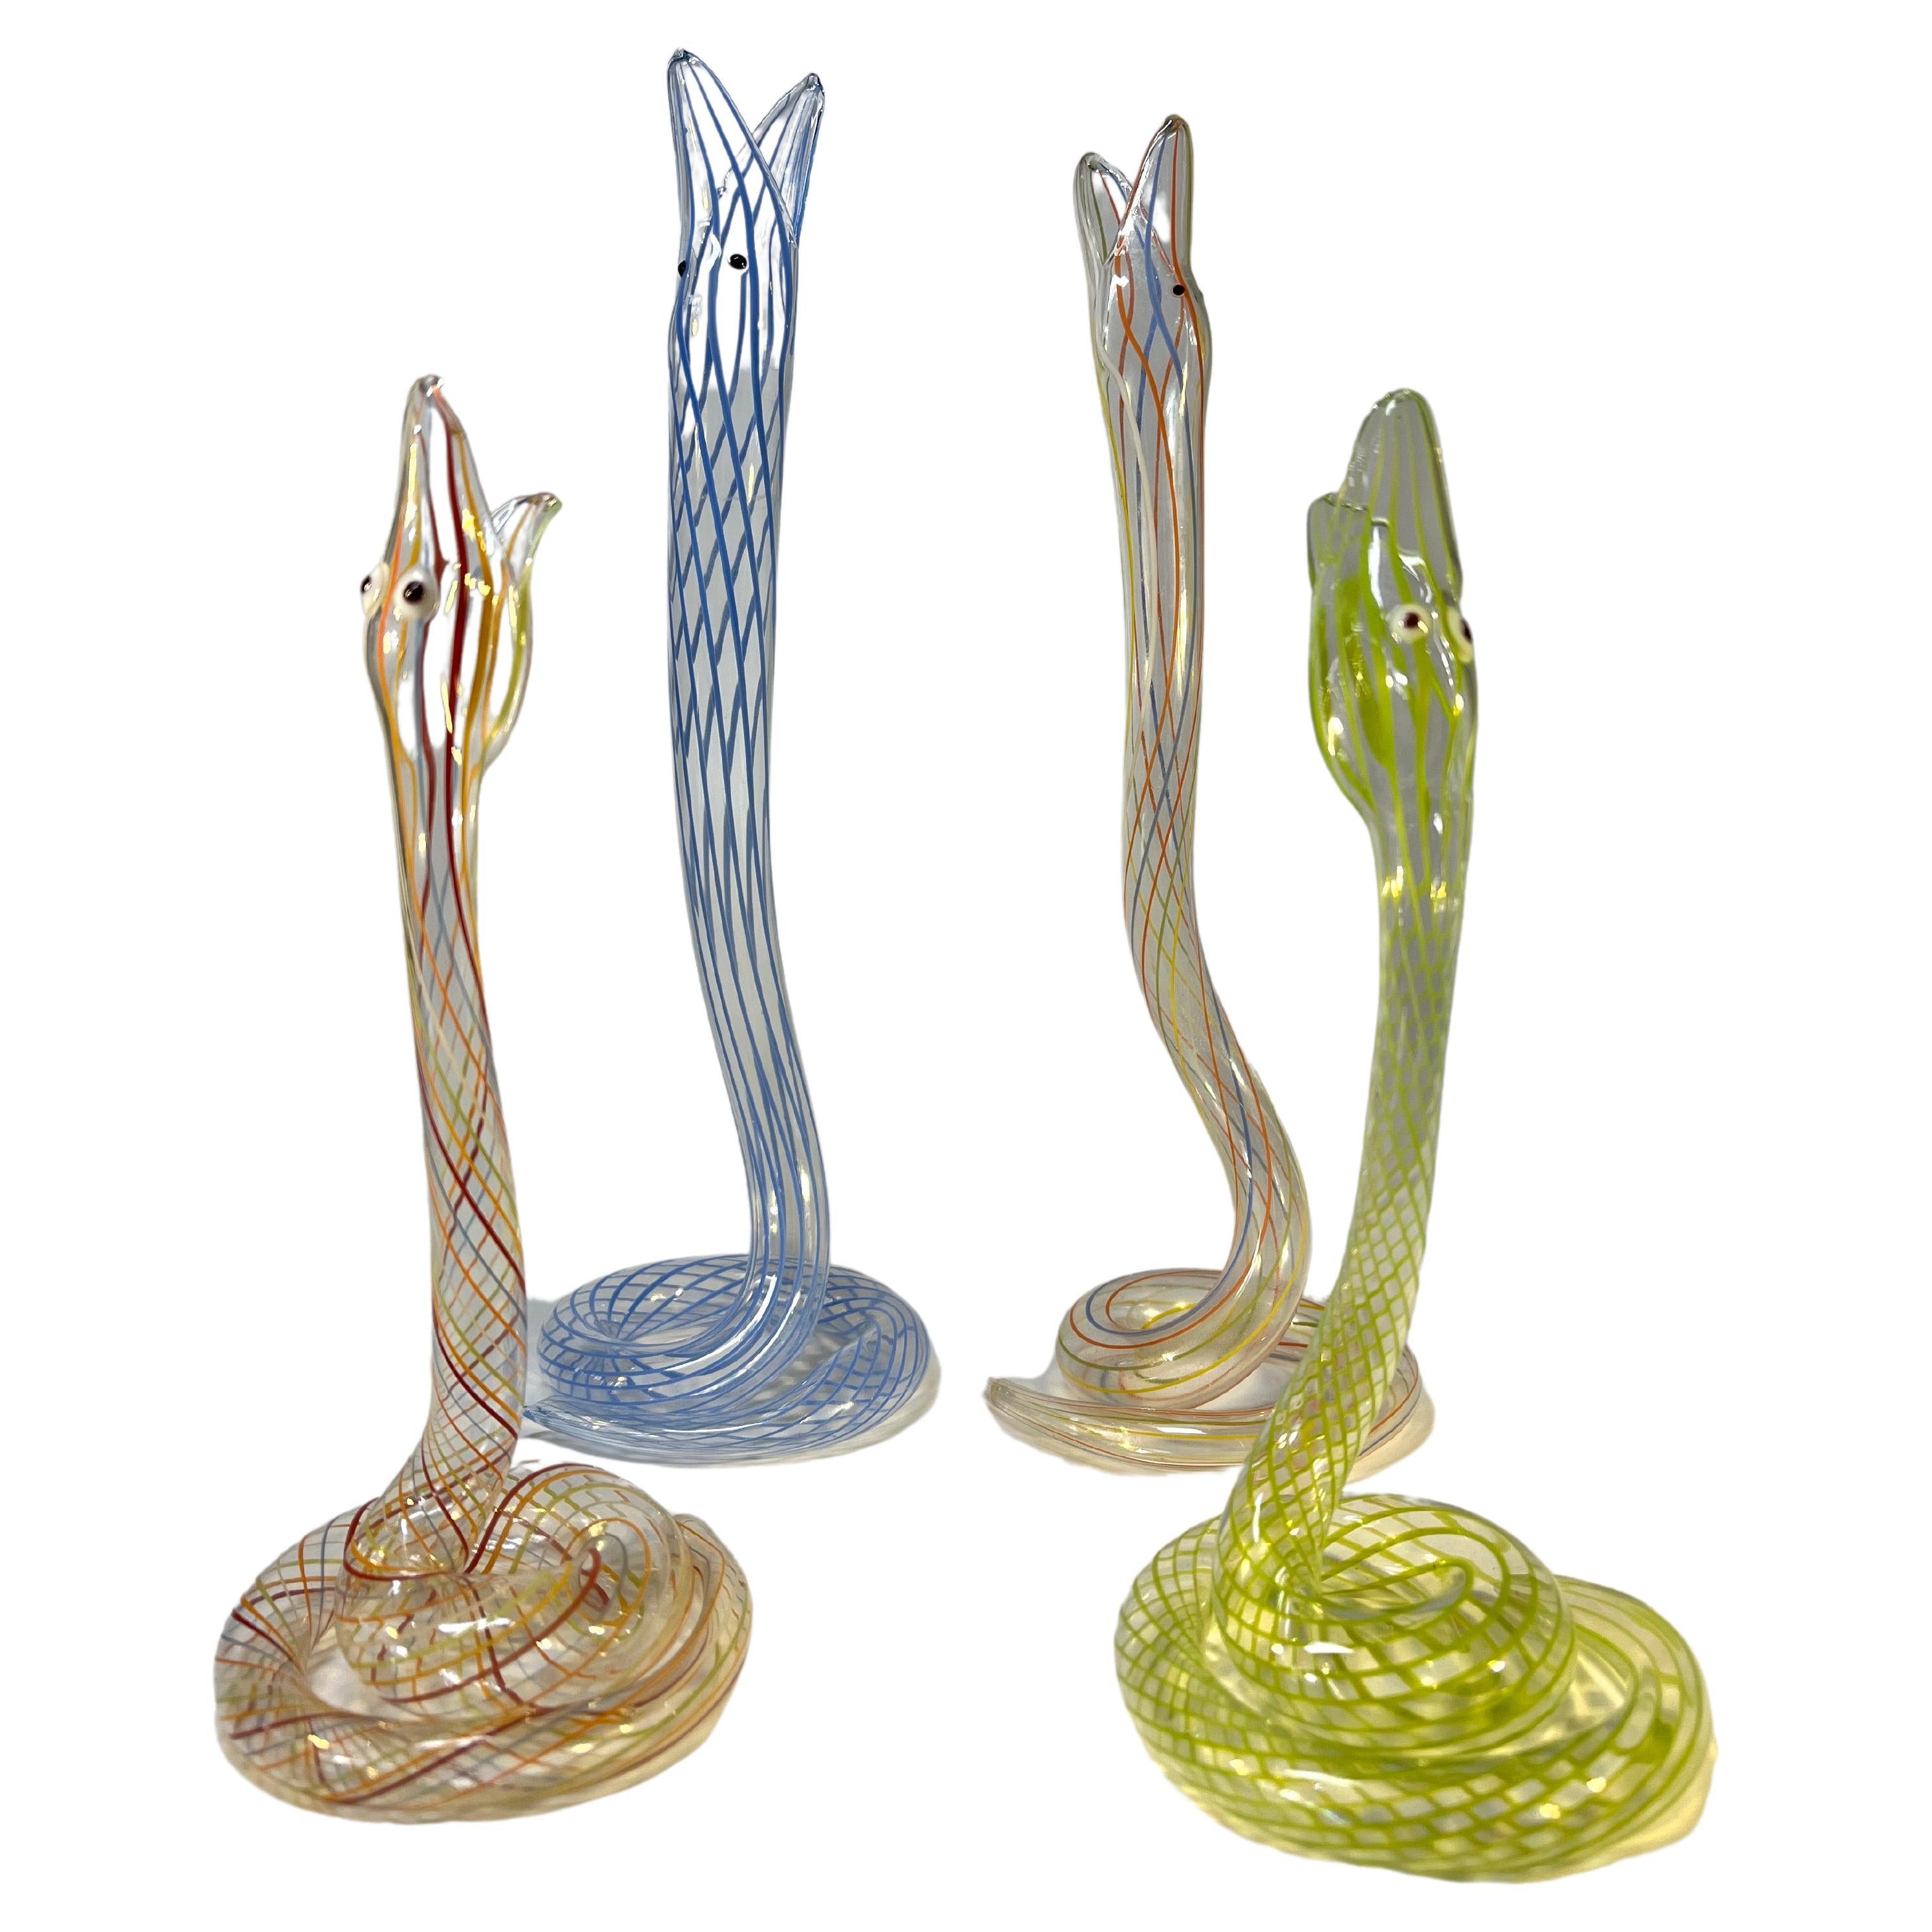 Slither of Whimsical Bimini Glass Lampwork Art Deco Snake Vases, c1920-1930 For Sale